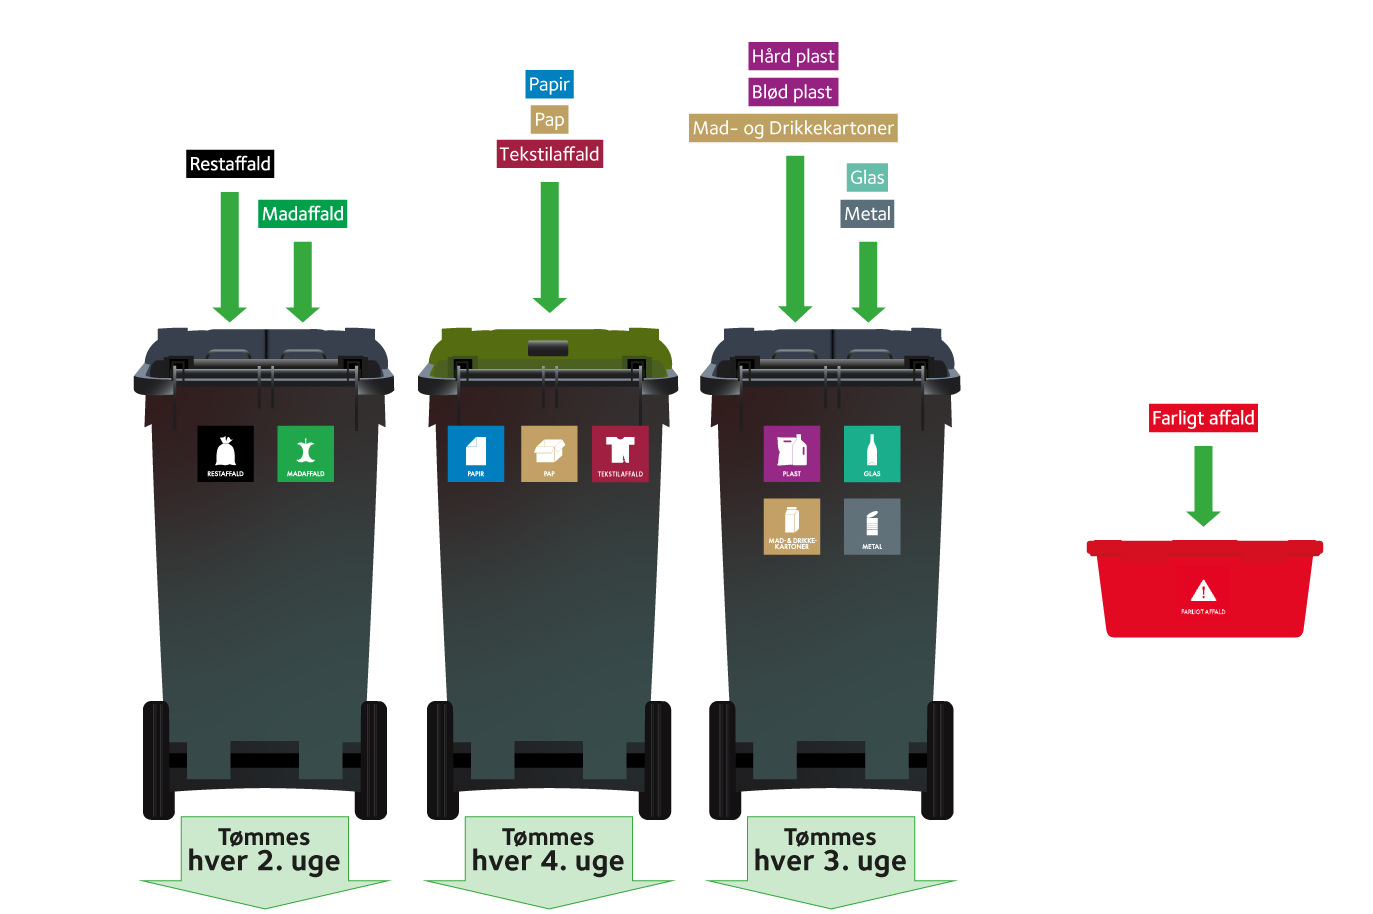 Tre affaldsbeholdere til sortering af 9 typer affald i hjemmet samt en rød kasse til sortering af farligt affald